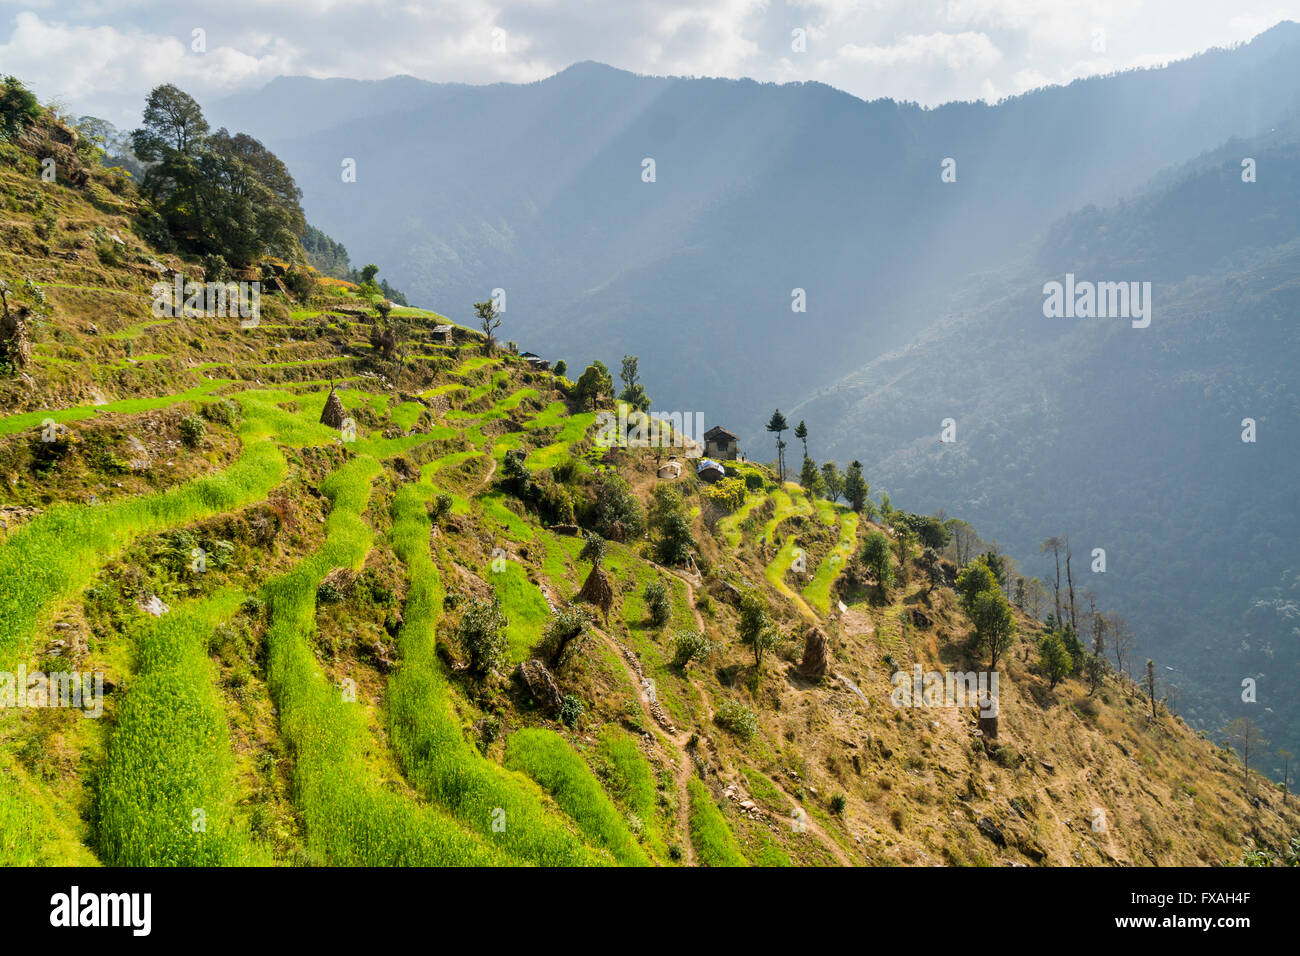 Bauernhaus, am Hang eines Berges gelegen und umgeben von grünen Wiesen und Bäumen, Kinja, Solo Khumbu, Nepal Stockfoto